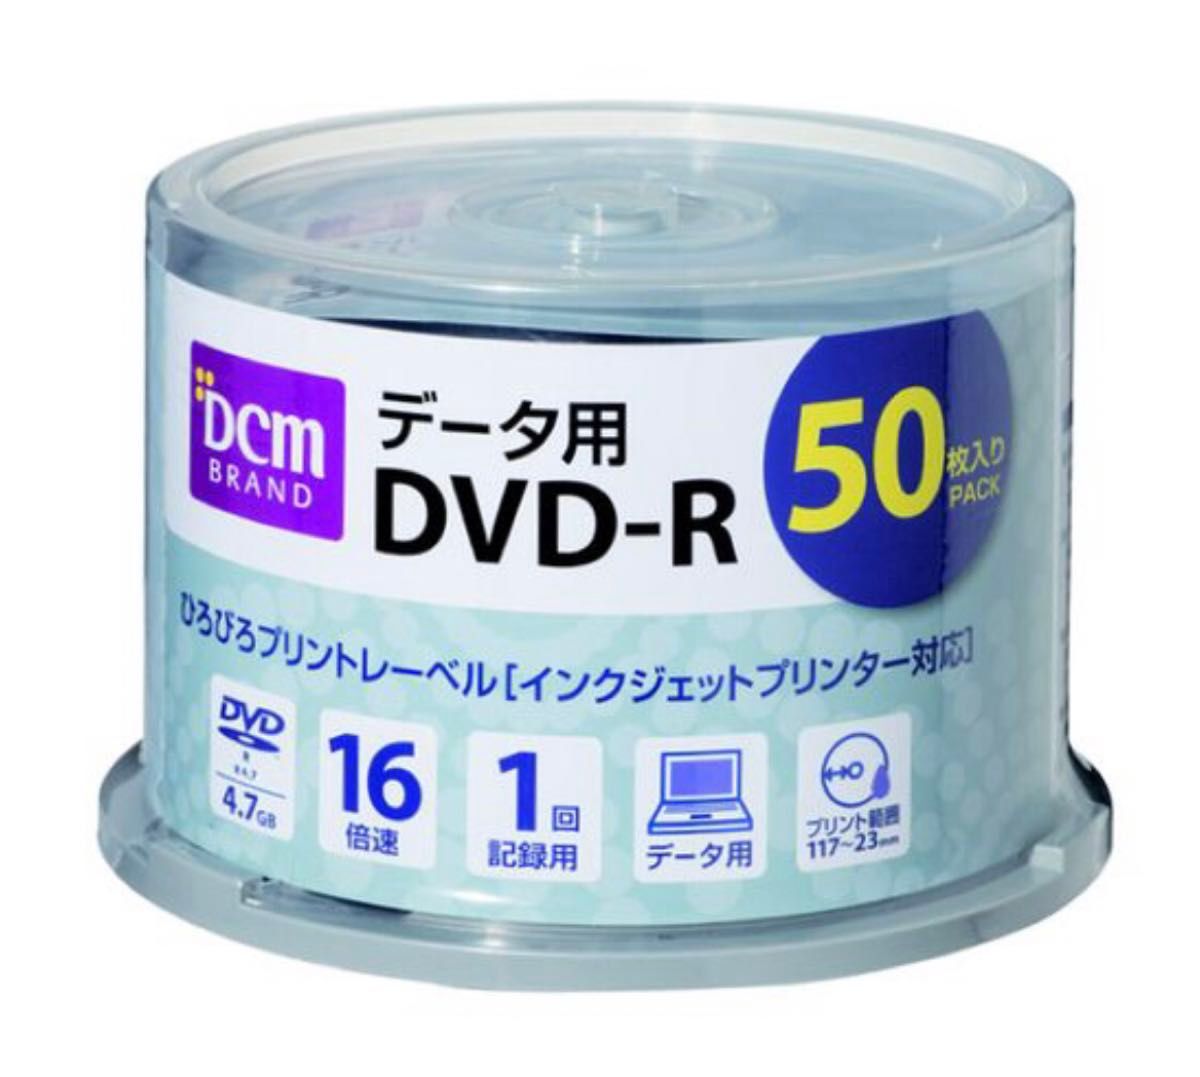 【新品未使用】データ用DVD-R S16-DV06 50枚入り